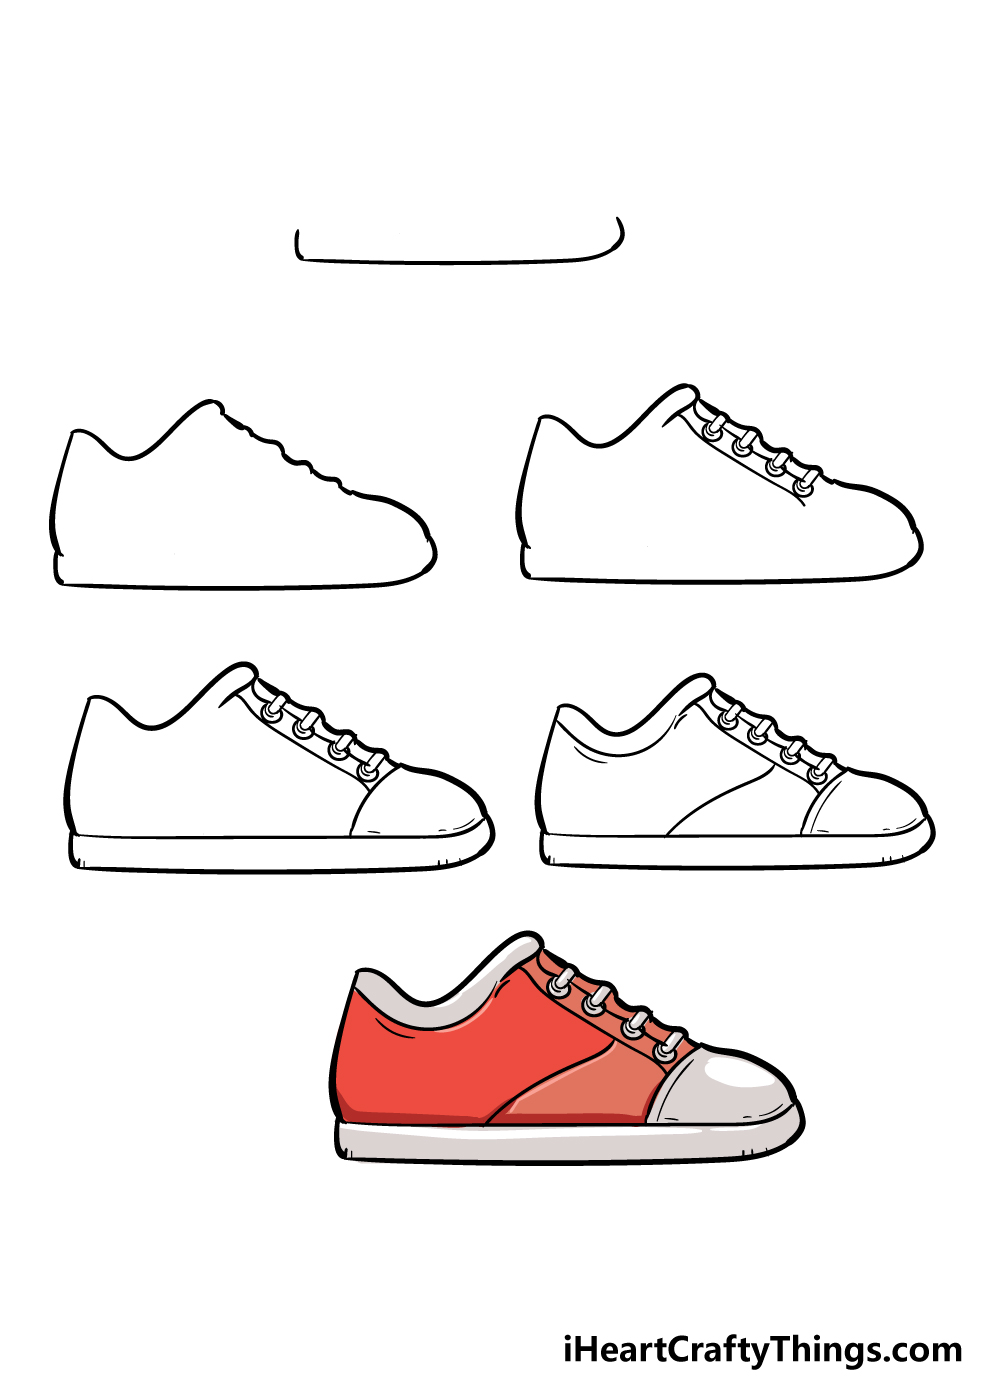 Shoe in 6 steps - Hướng dẫn Cách vẽ đôi giày đơn giản với 6 bước cơ bản